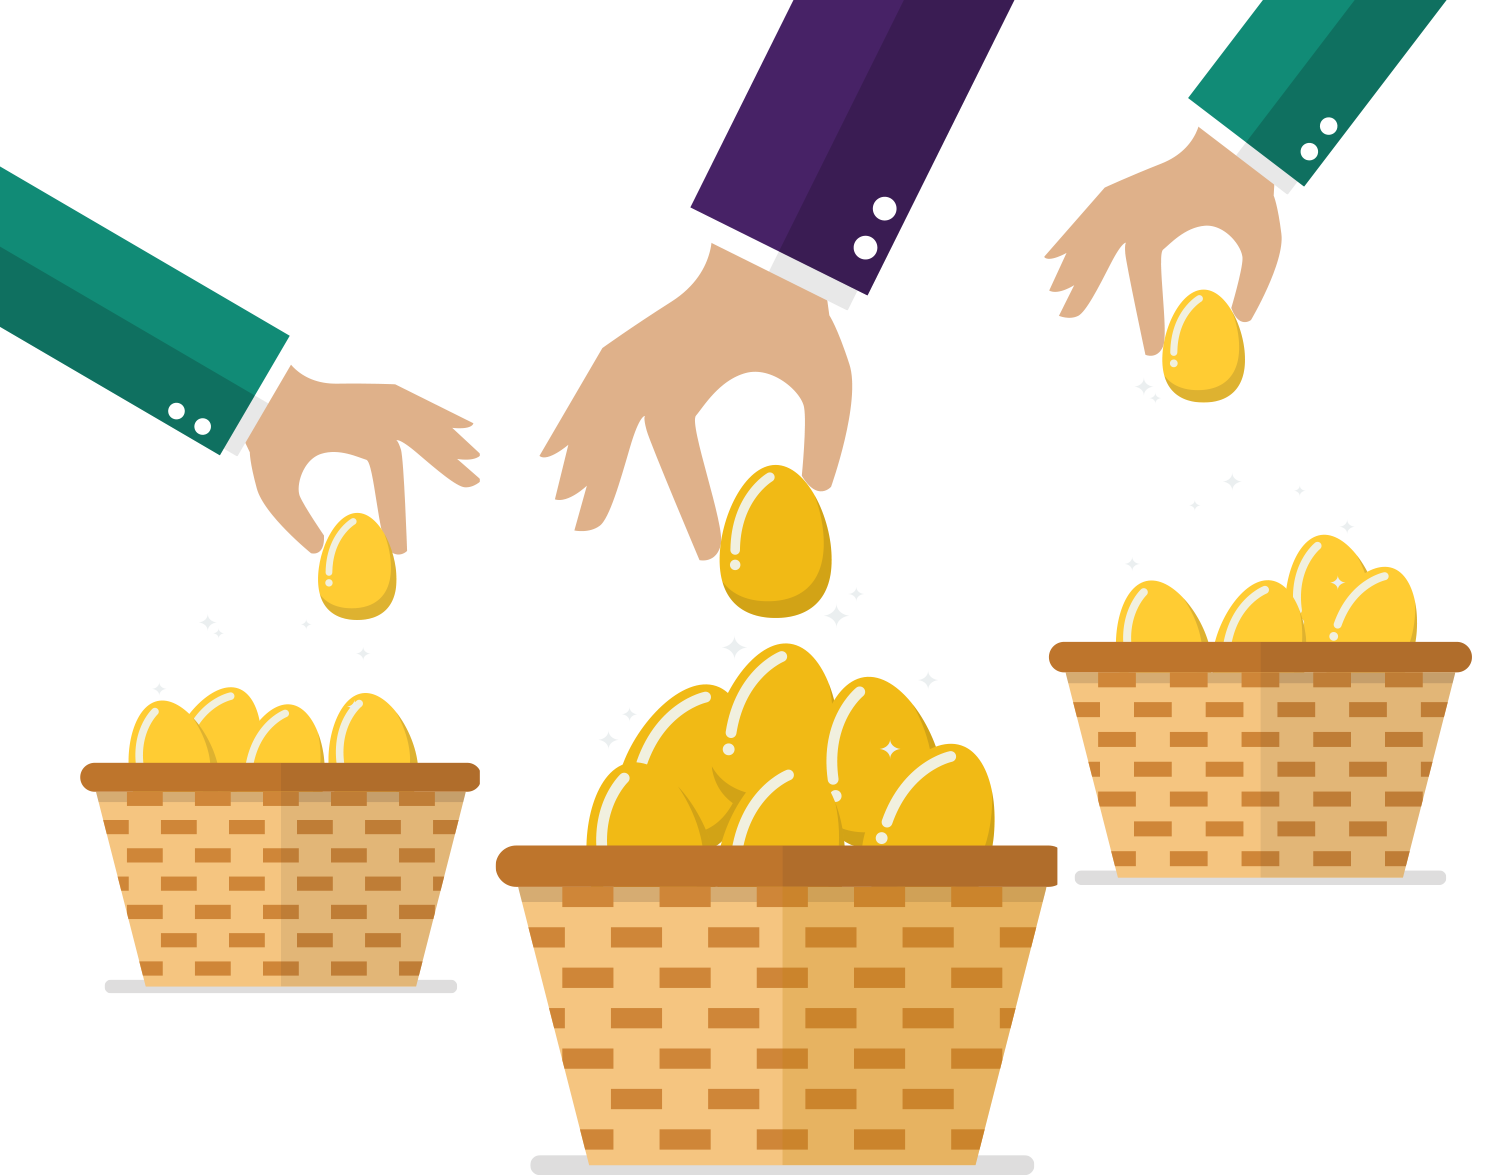 Illustration of hands putting golden eggs in baskets